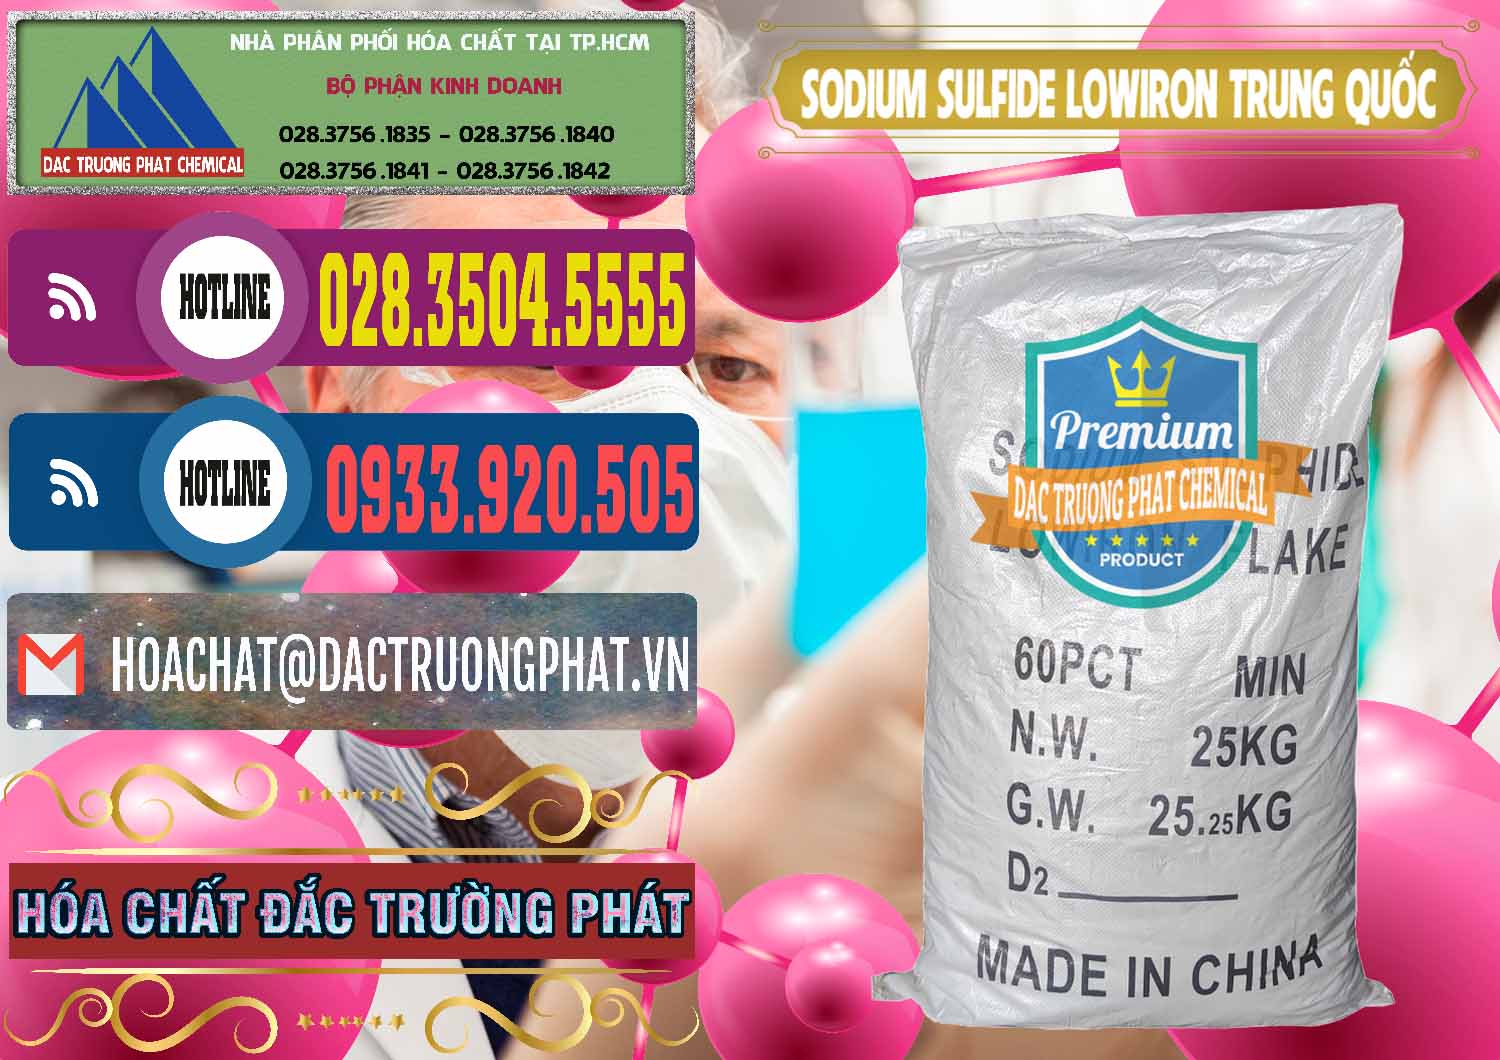 Cty chuyên nhập khẩu - bán Sodium Sulfide NA2S – Đá Thối Lowiron Trung Quốc China - 0227 - Công ty cung cấp và bán hóa chất tại TP.HCM - muabanhoachat.com.vn